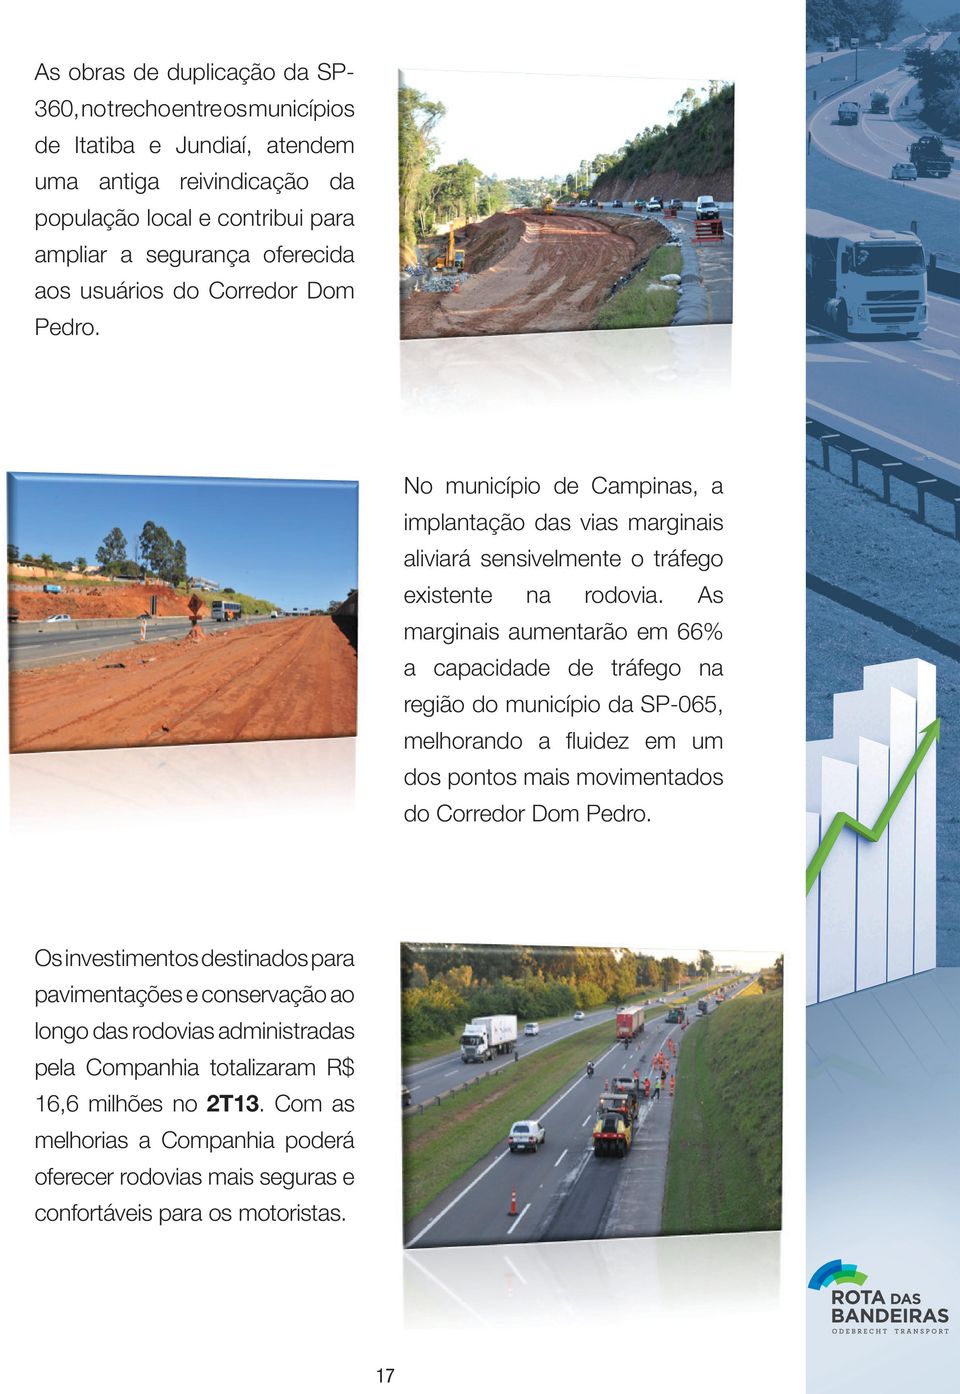 As marginais aumentarão em 66% a capacidade de tráfego na região do município da SP-065, melhorando a fluidez em um dos pontos mais movimentados do Corredor Dom Pedro.